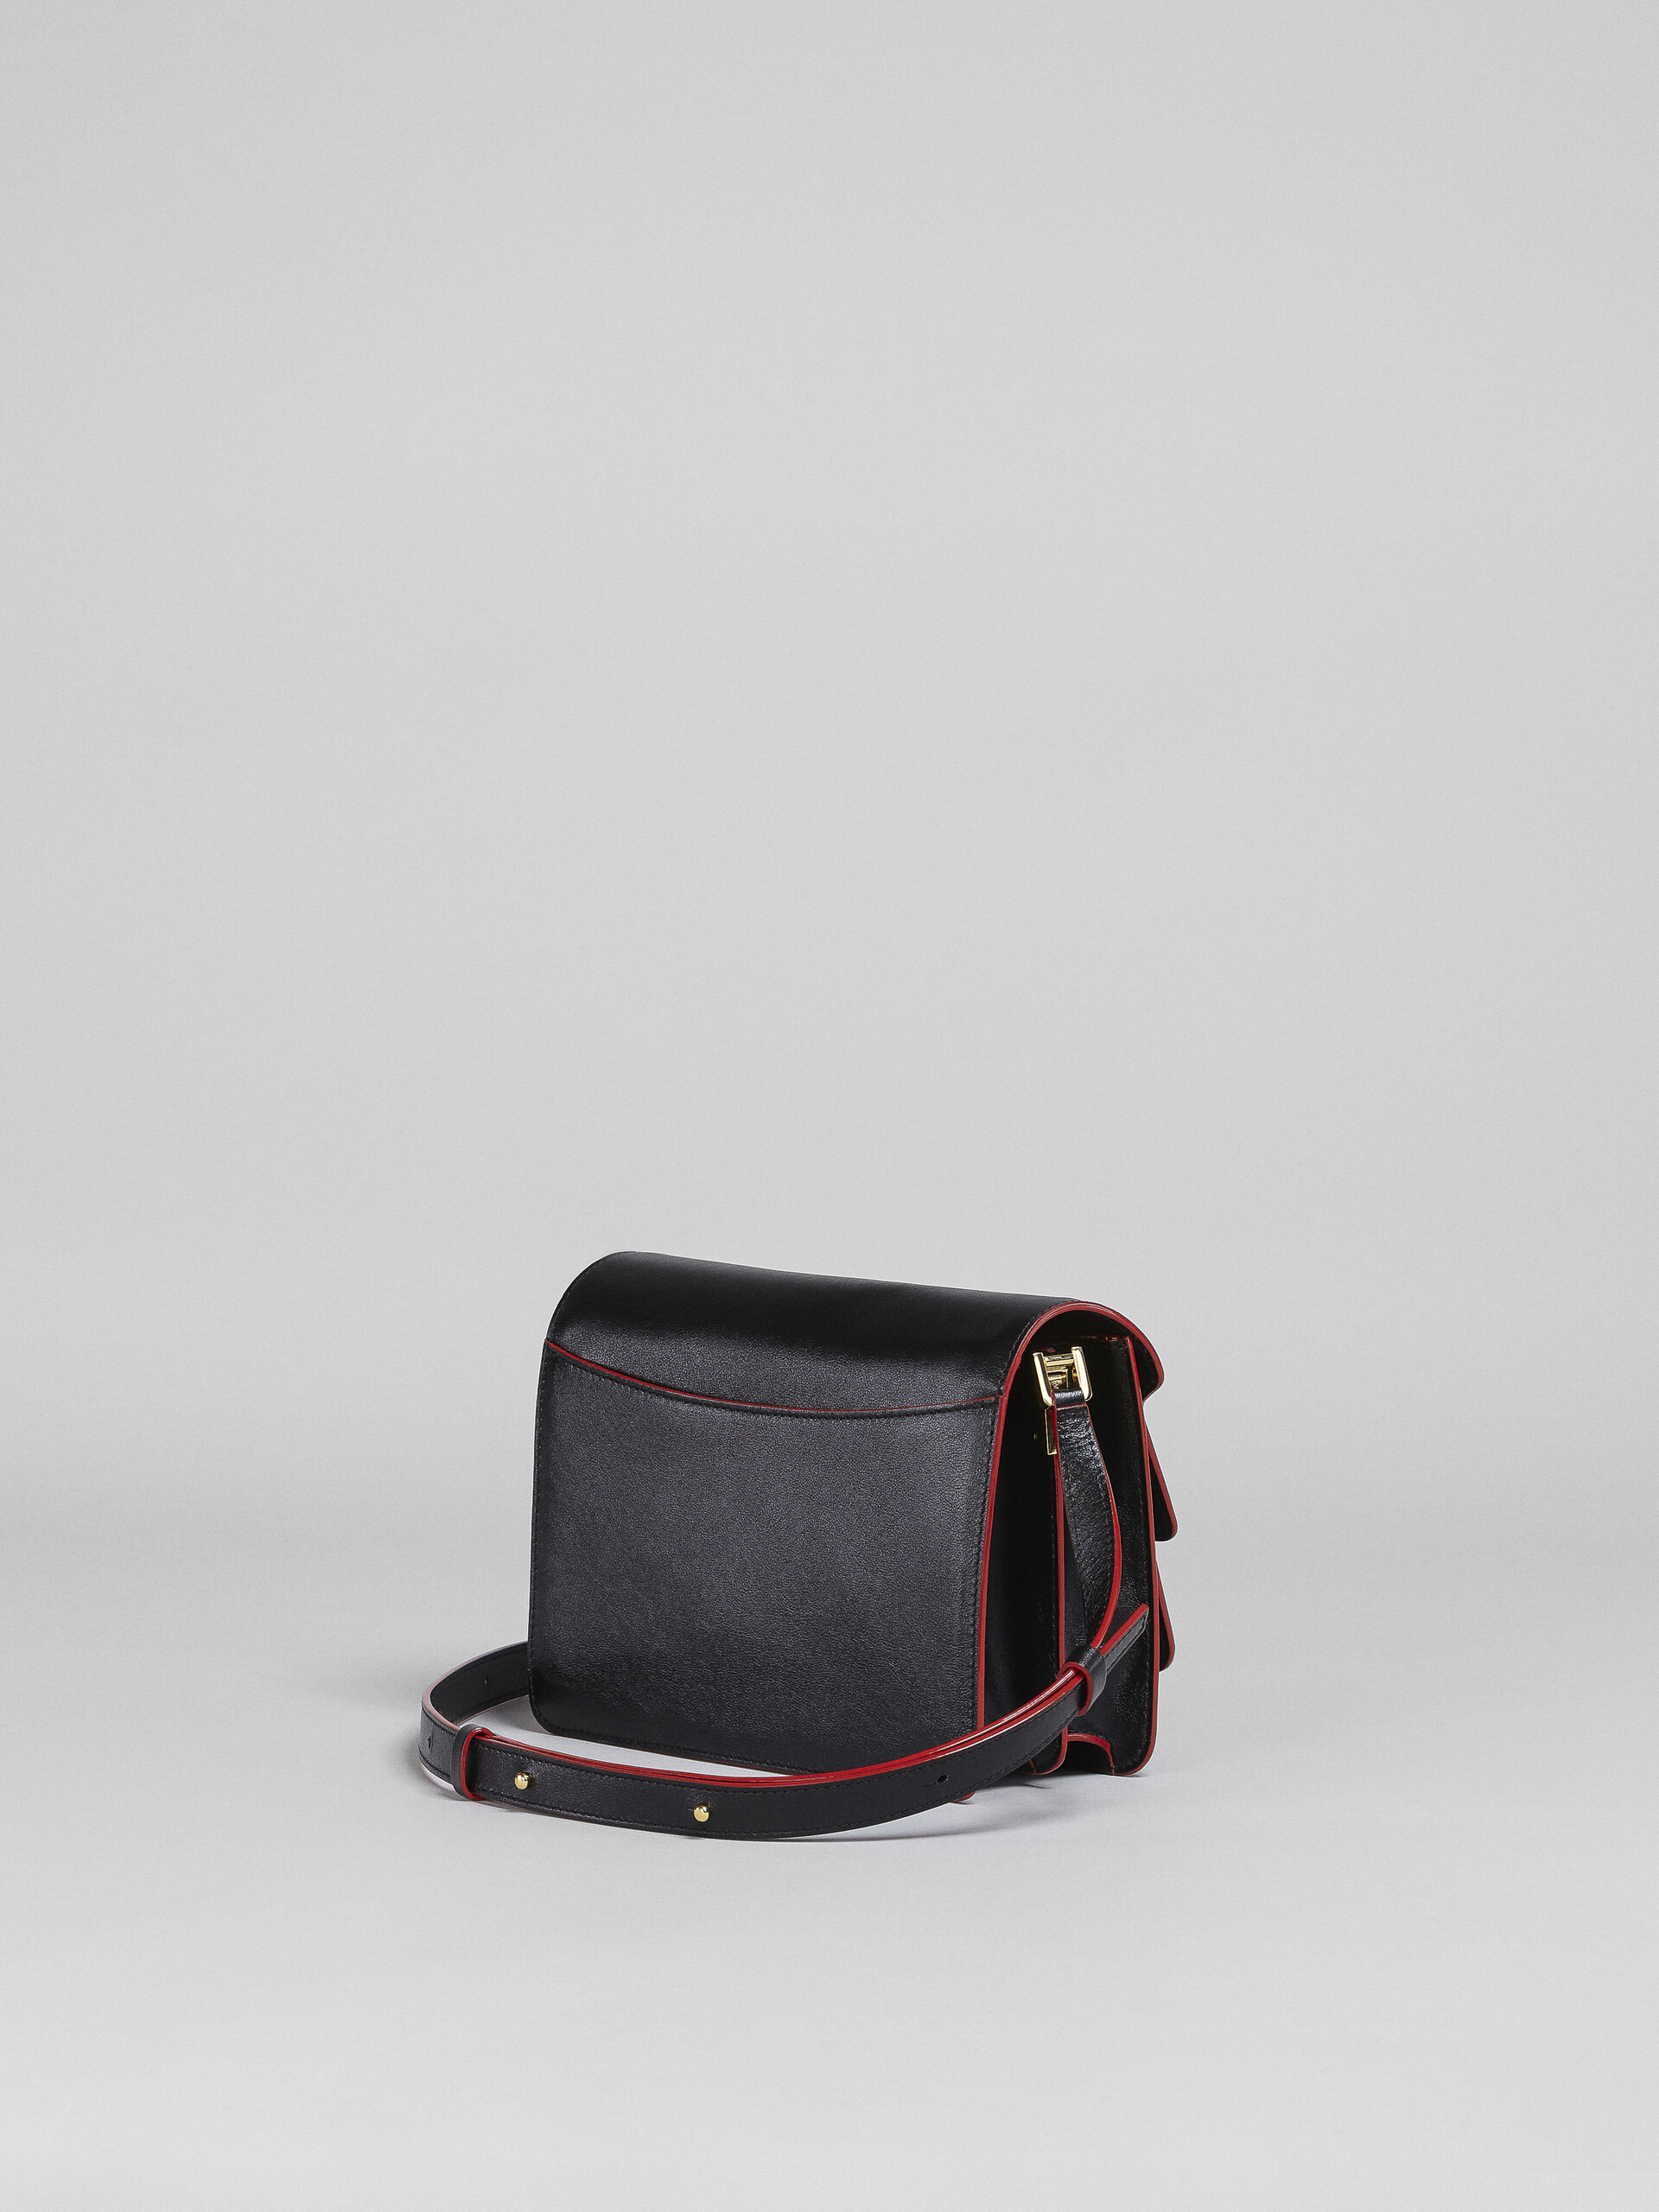 Tumbled calf leather TRUNK SOFT bag - Shoulder Bag - Image 3